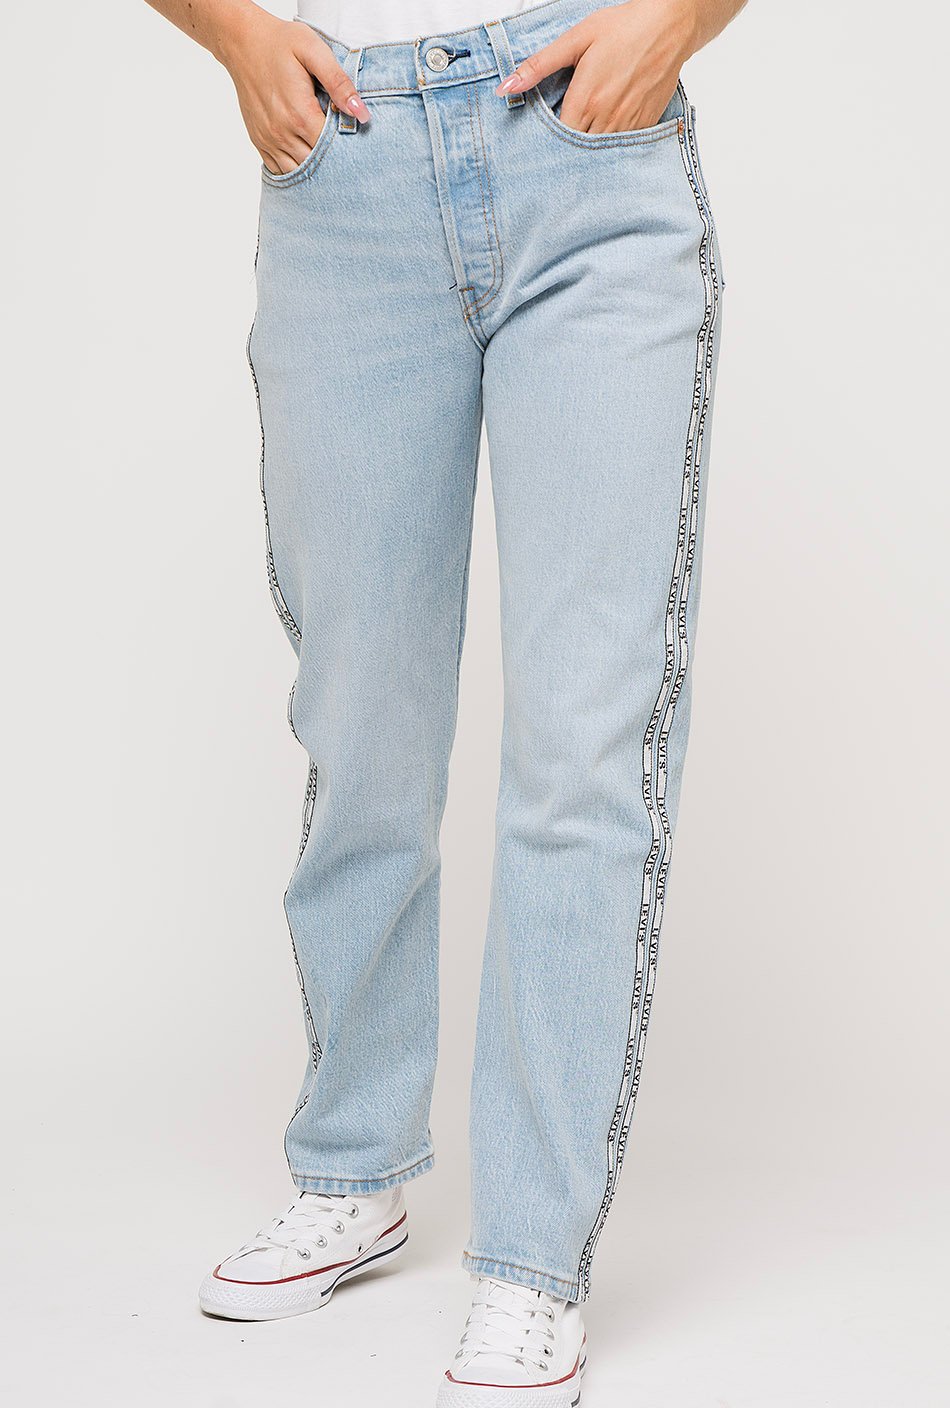 Levi's 501 crop jeans denim